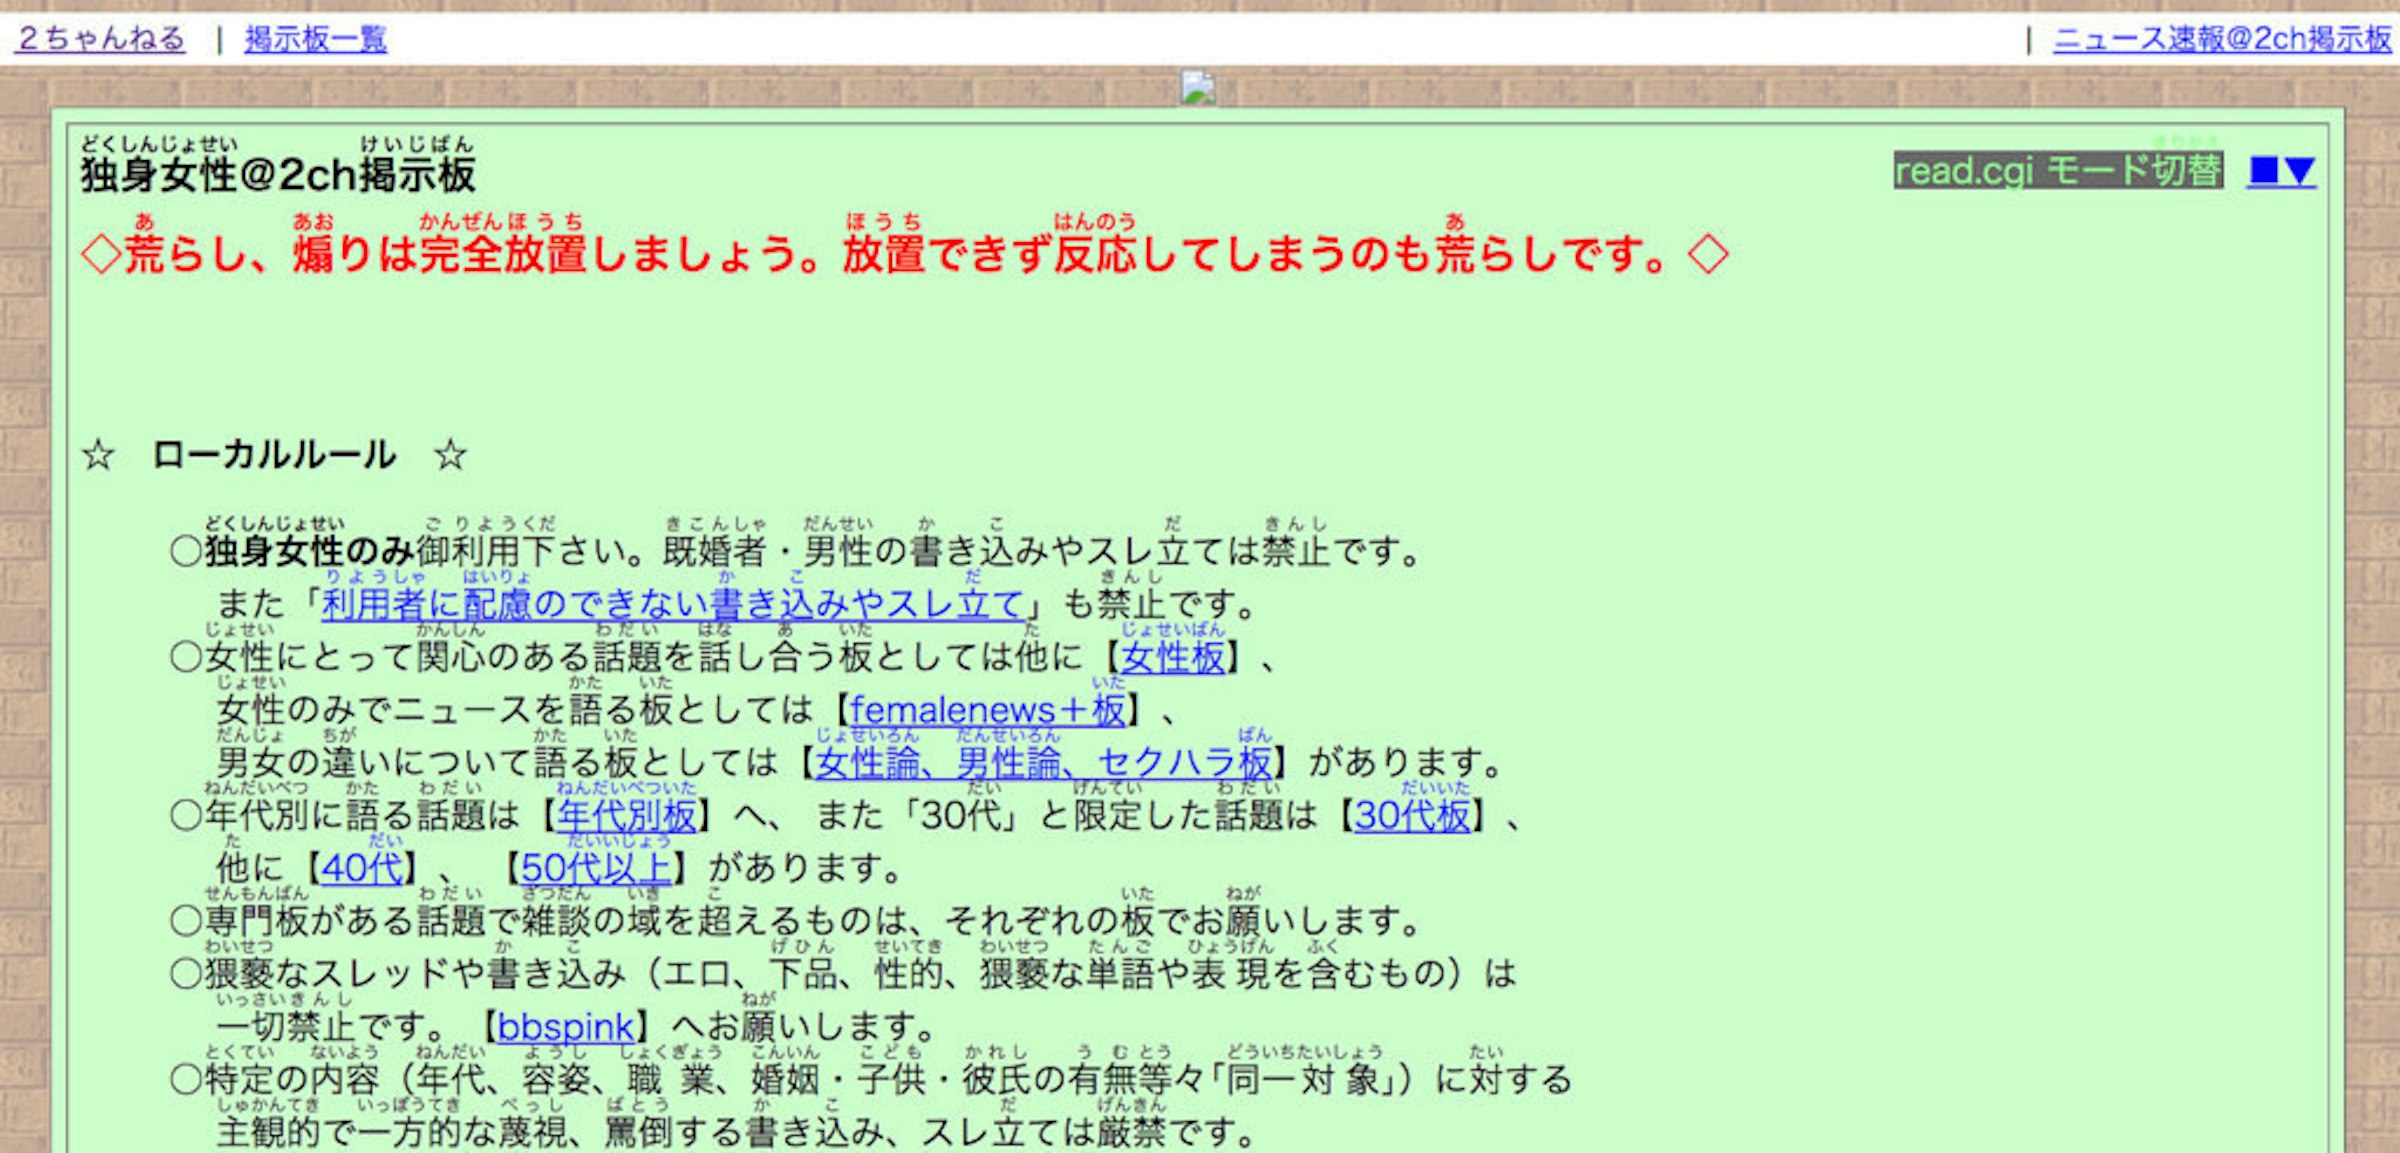 面白日本 免費的學日文線上資源 二 日文網站漢字不會念 免安裝 平假名透視眼鏡 一秒解決 學習 癮科技cool3c